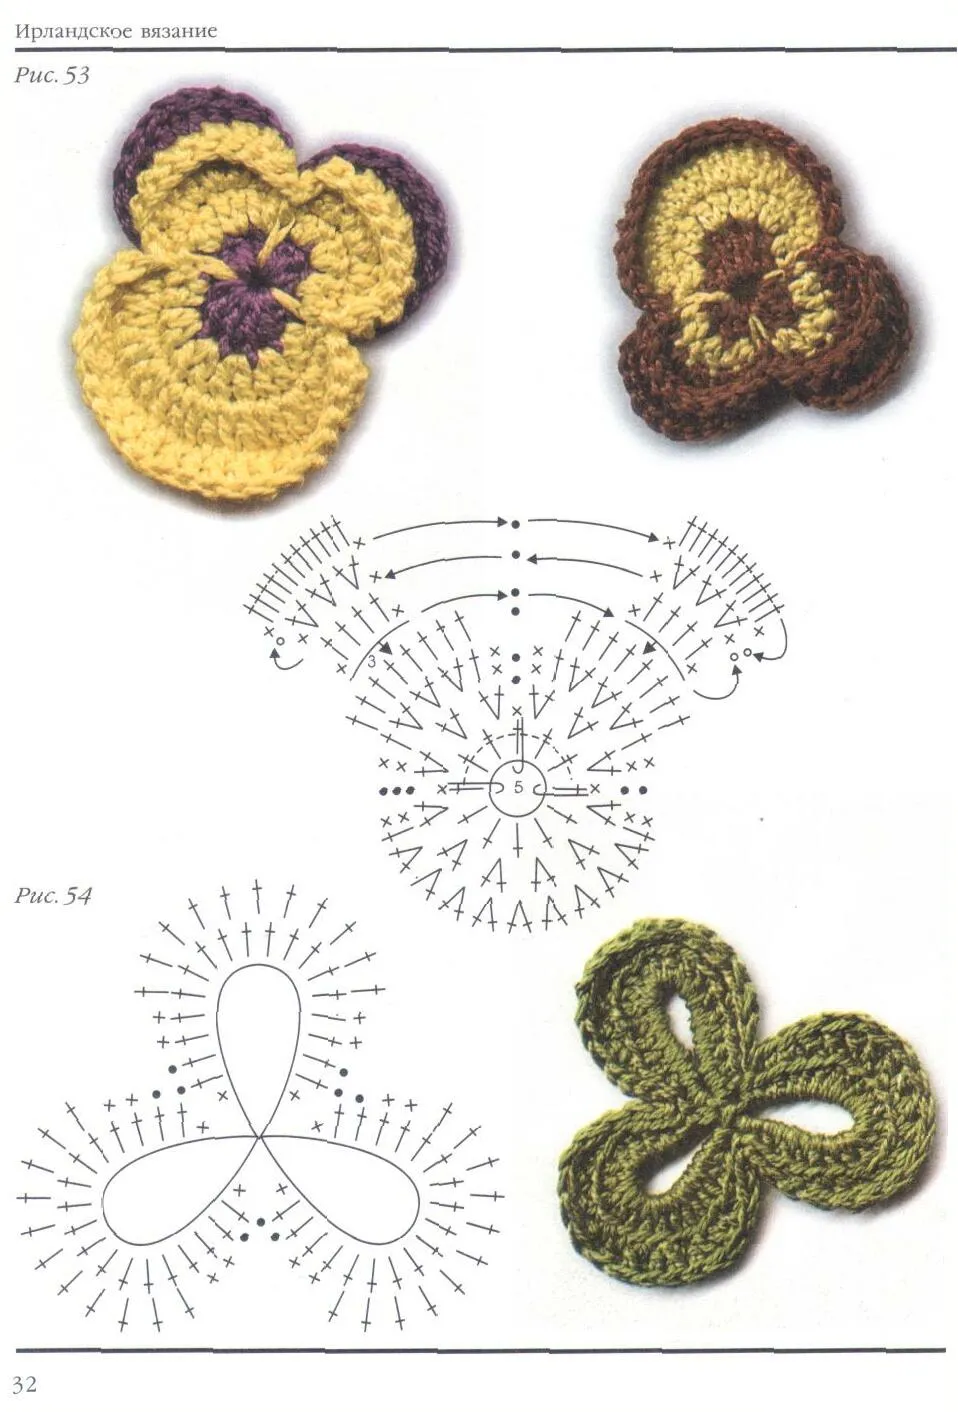 Patrones de hojas tejidas a crochet - Imagui